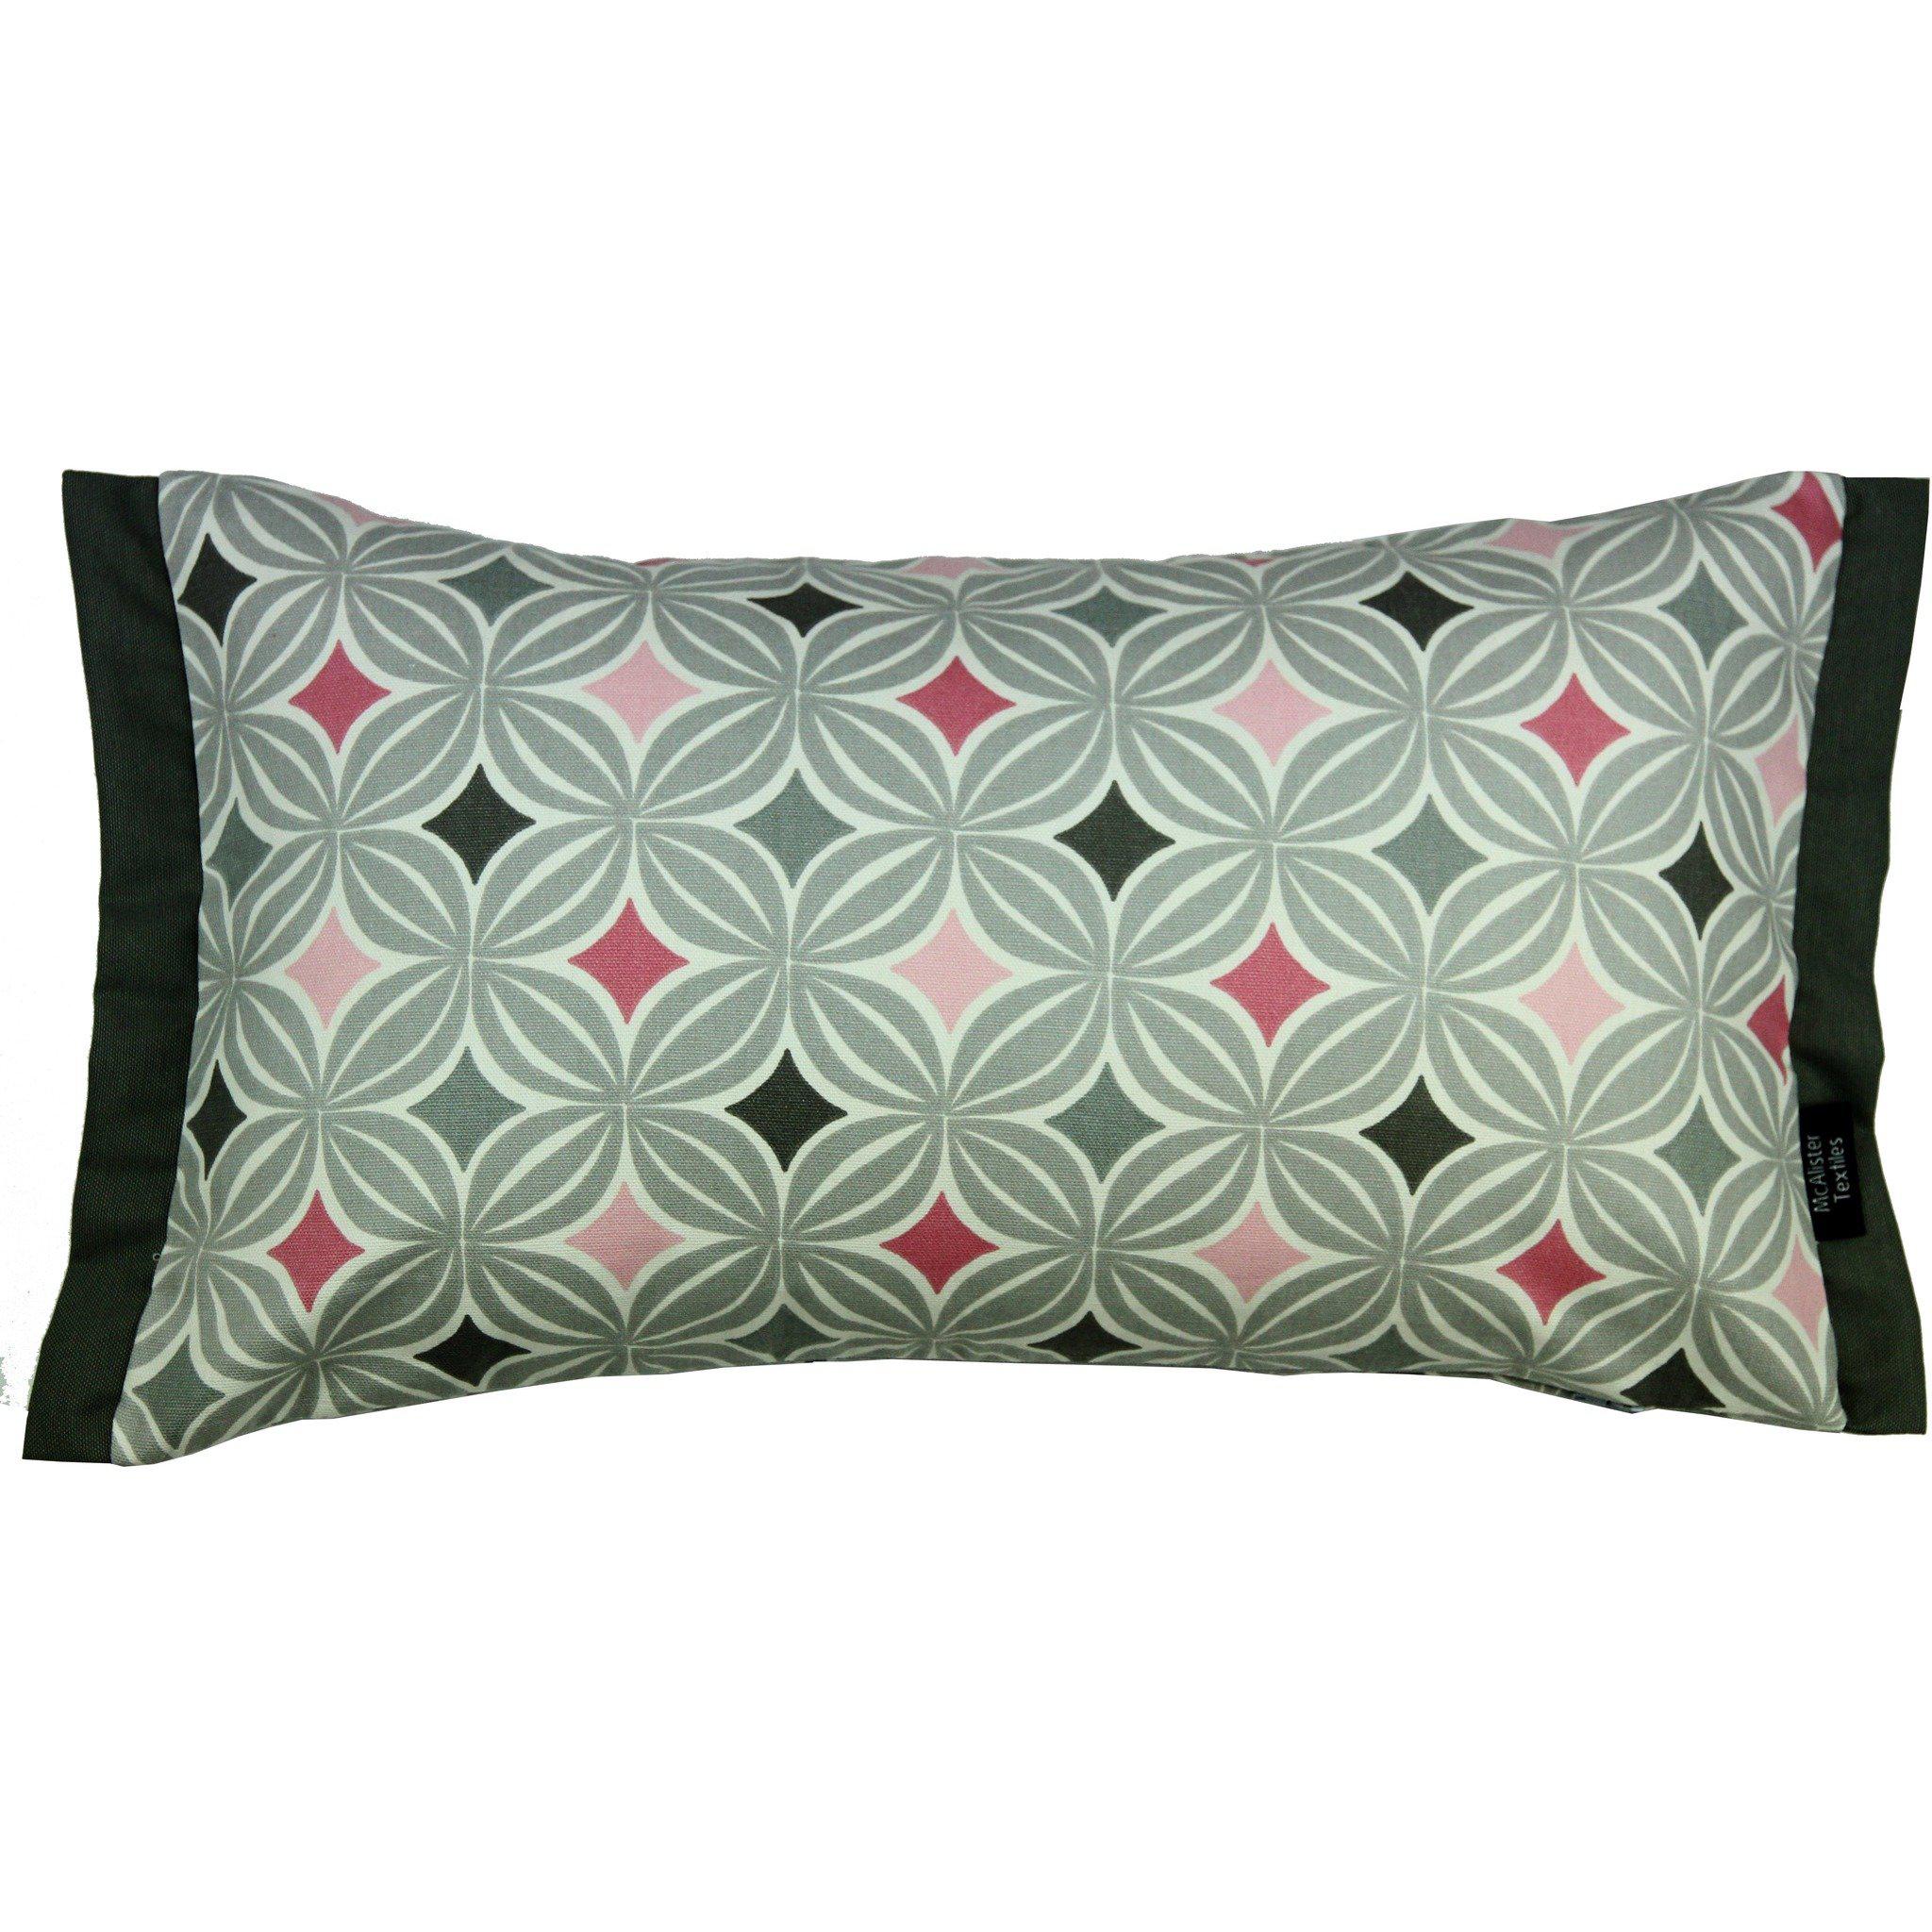 McAlister Textiles Laila Cotton Print Blush Pink Pillow Pillow Cover Only 50cm x 30cm 